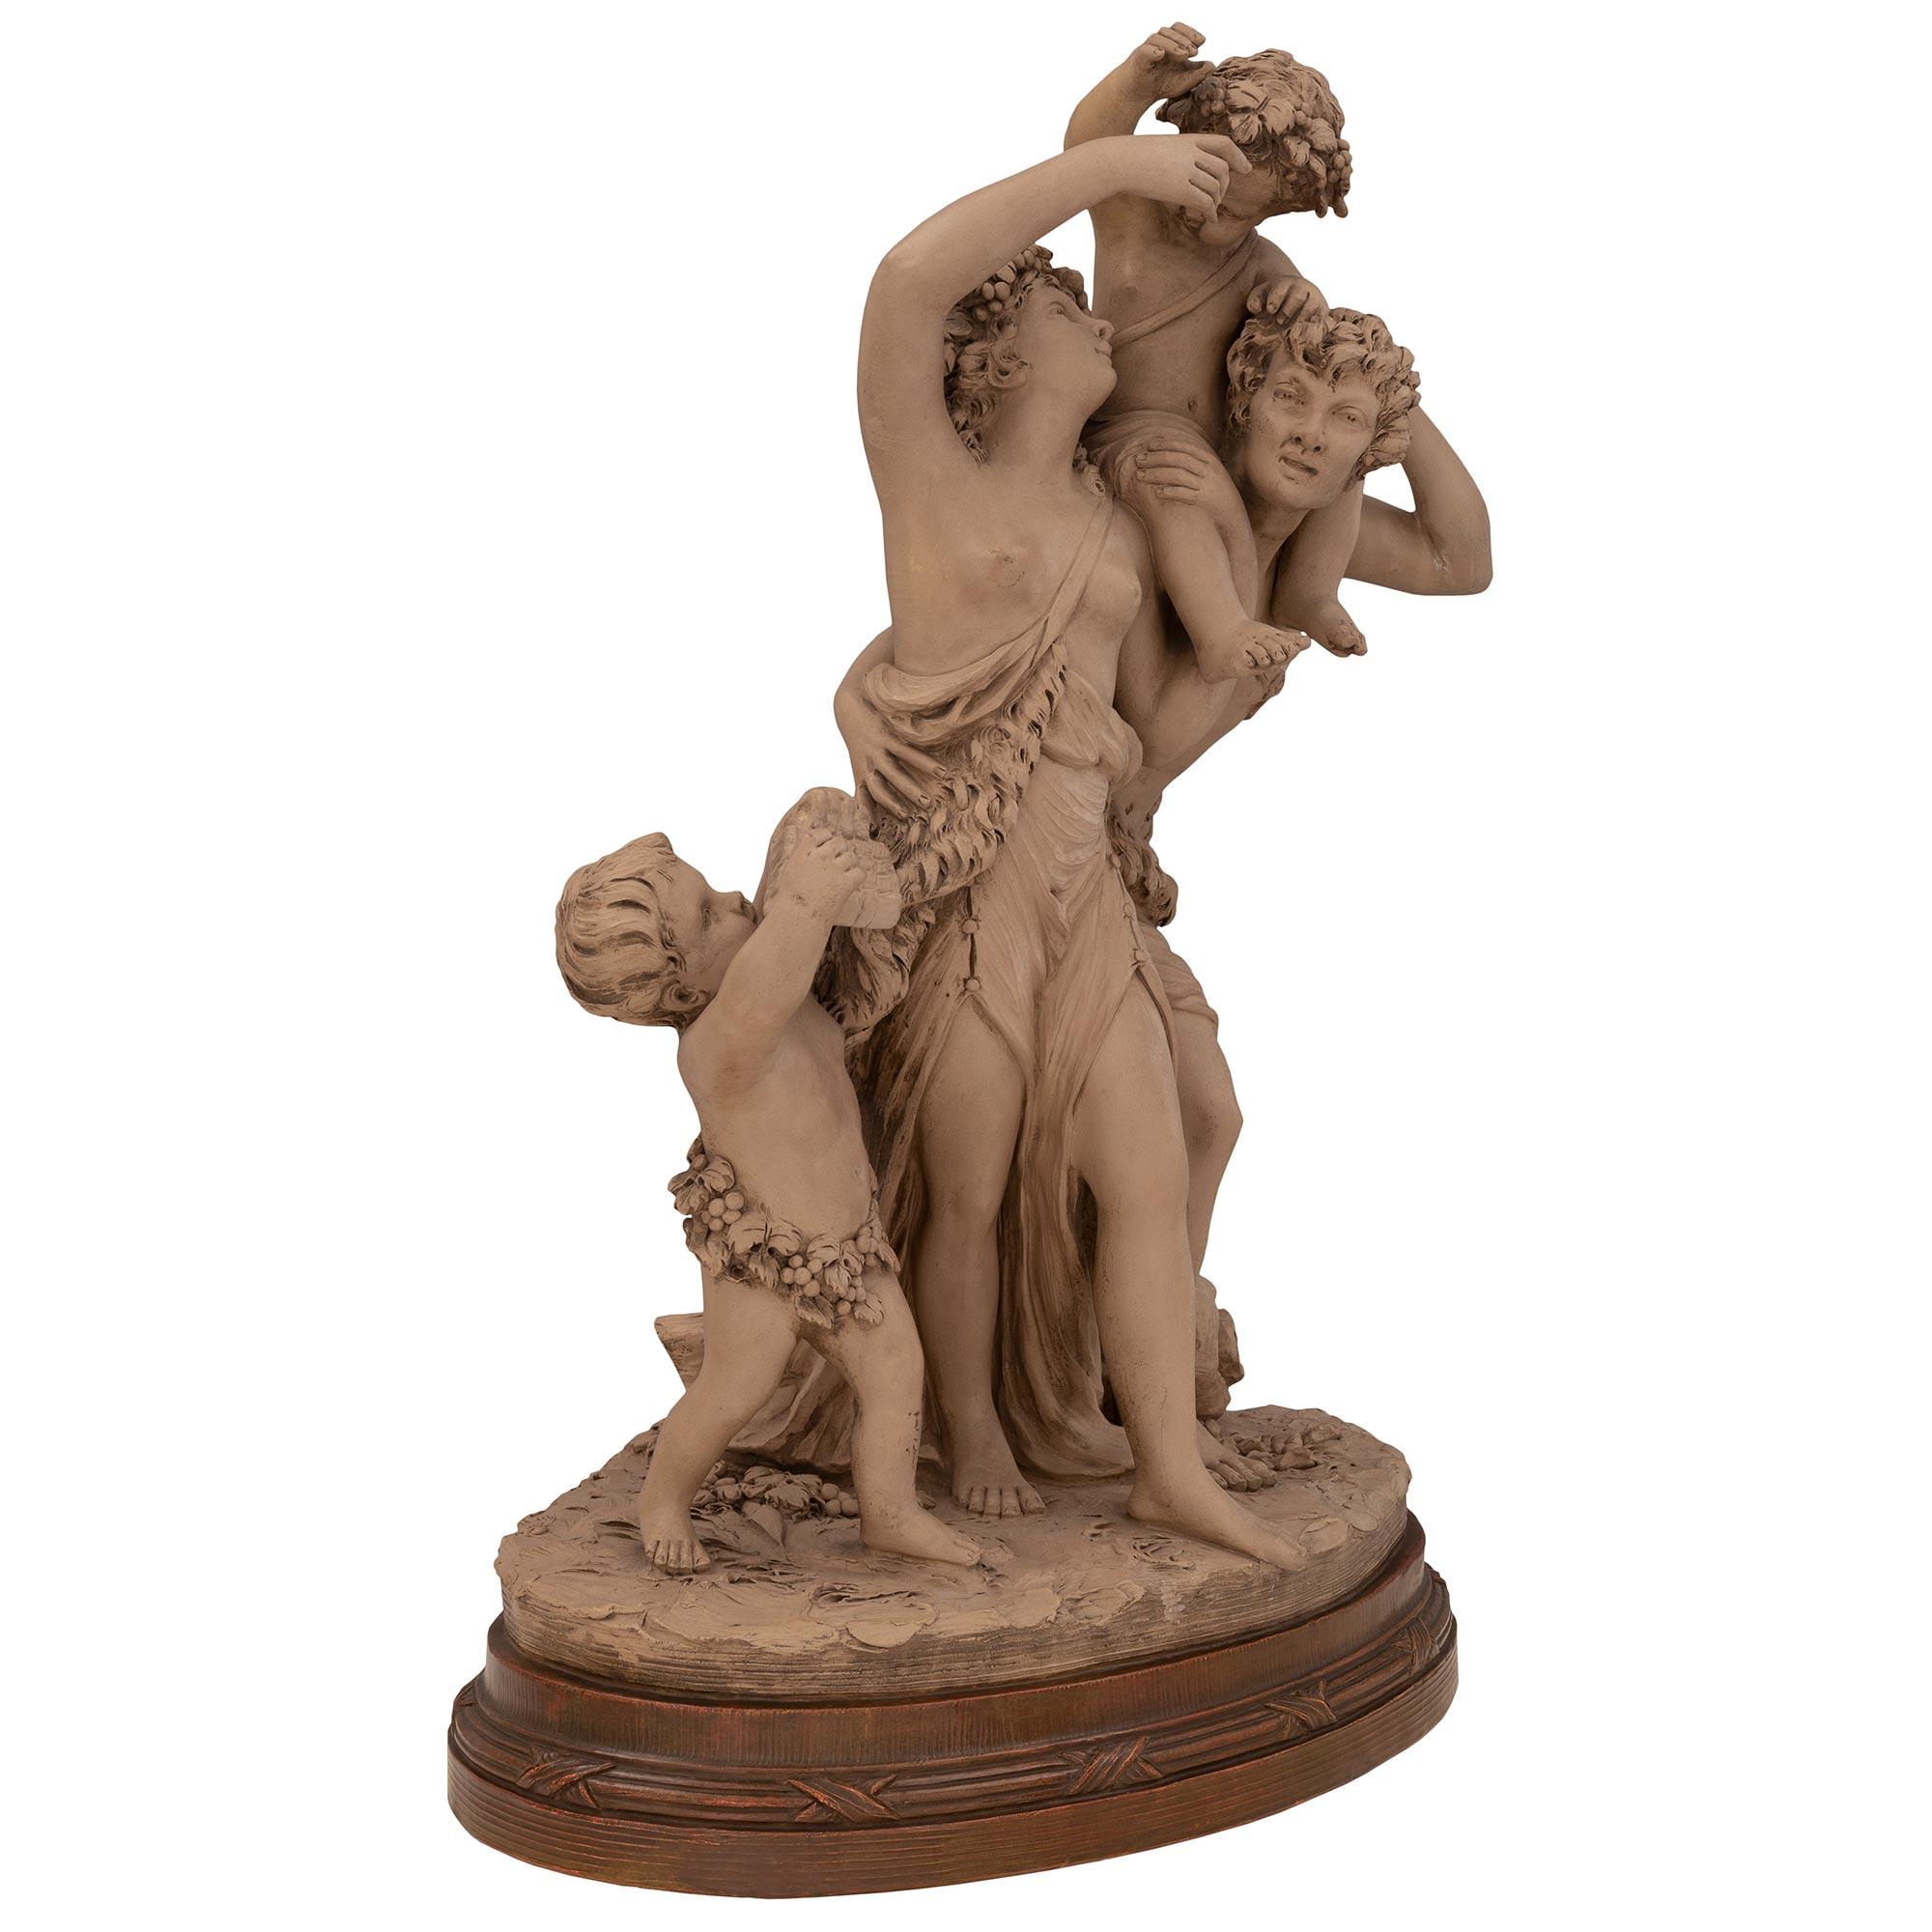 Belle statue en terre cuite de grande qualité, datant du XIXe siècle, de style Louis XVI, signée Clodion. La statue est surélevée par une belle base en terre cuite de patine plus foncée, au motif finement tacheté et à la bande enveloppante cannelée